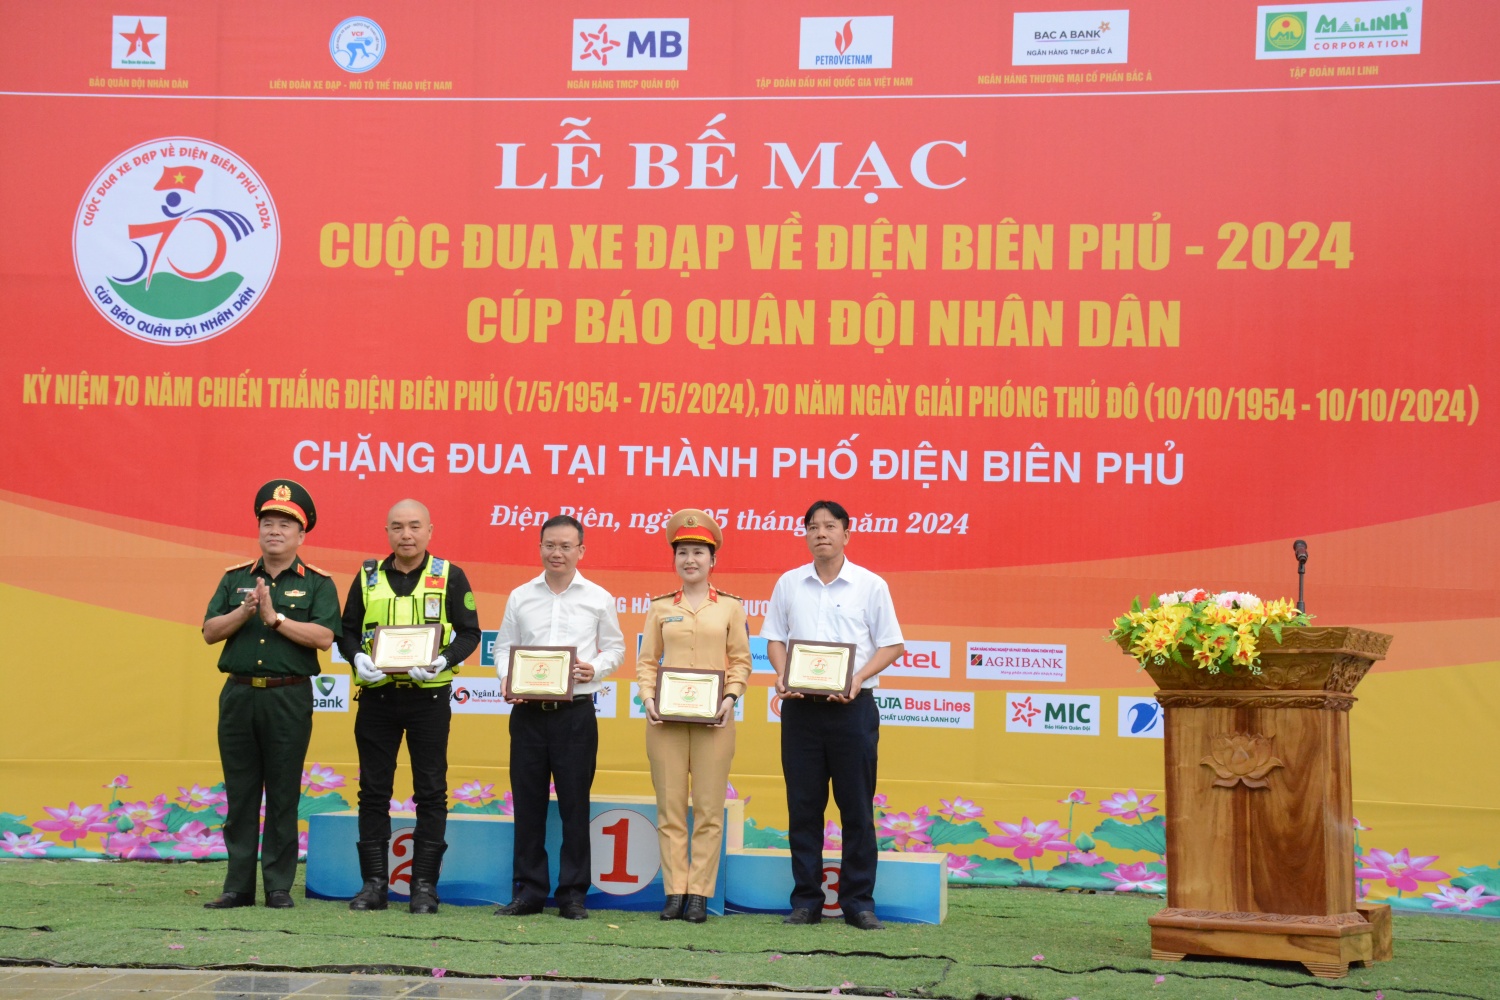 Anh Vũ Đình Lâm, đại diện CLB Mô tô thành phố Hà Nội nhận Kỷ niệm chương tại lễ bế mạc Cuộc đua